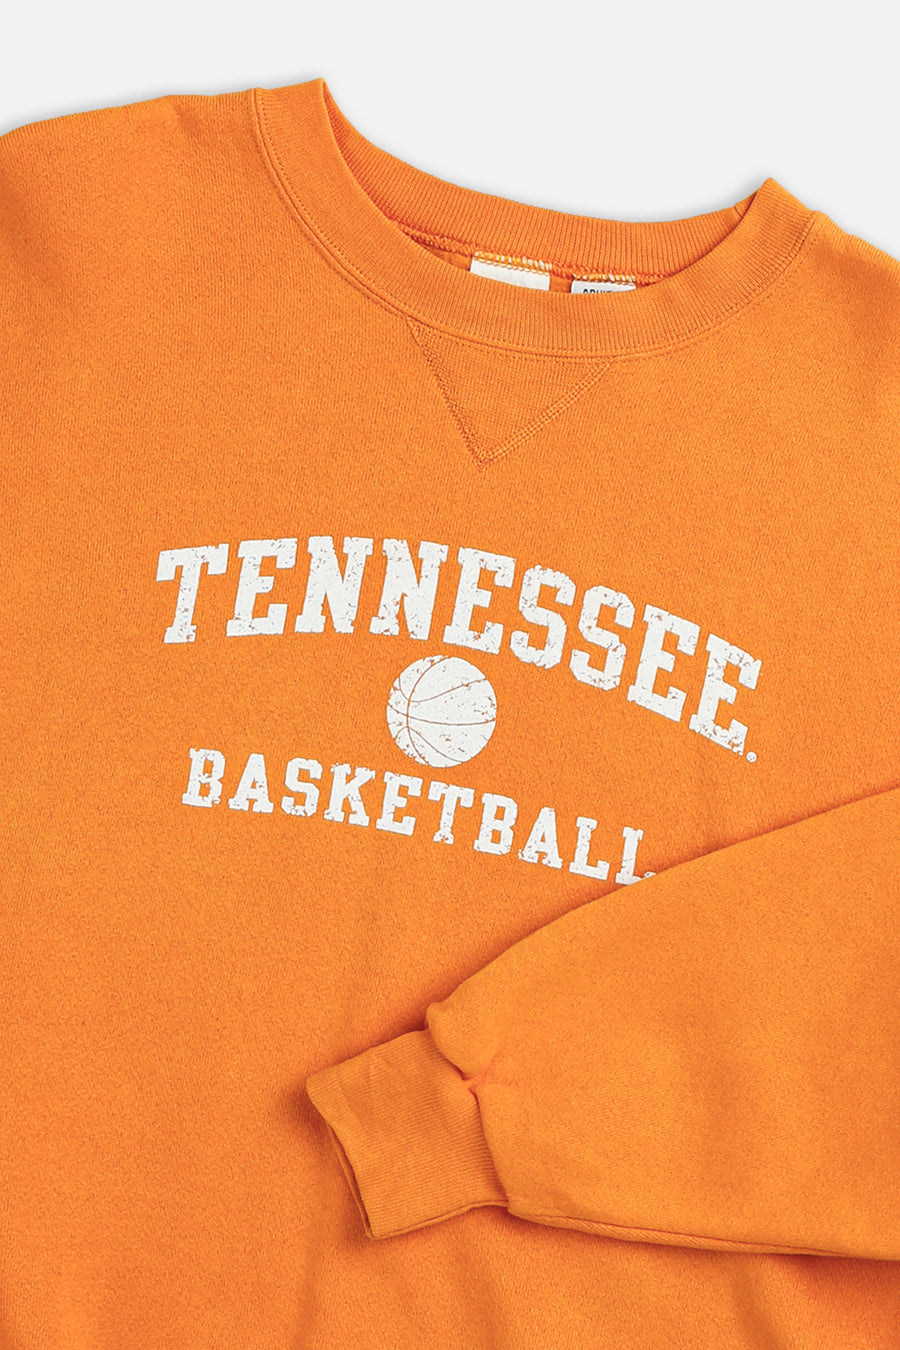 Vintage Tennessee Basketball Sweatshirt - L